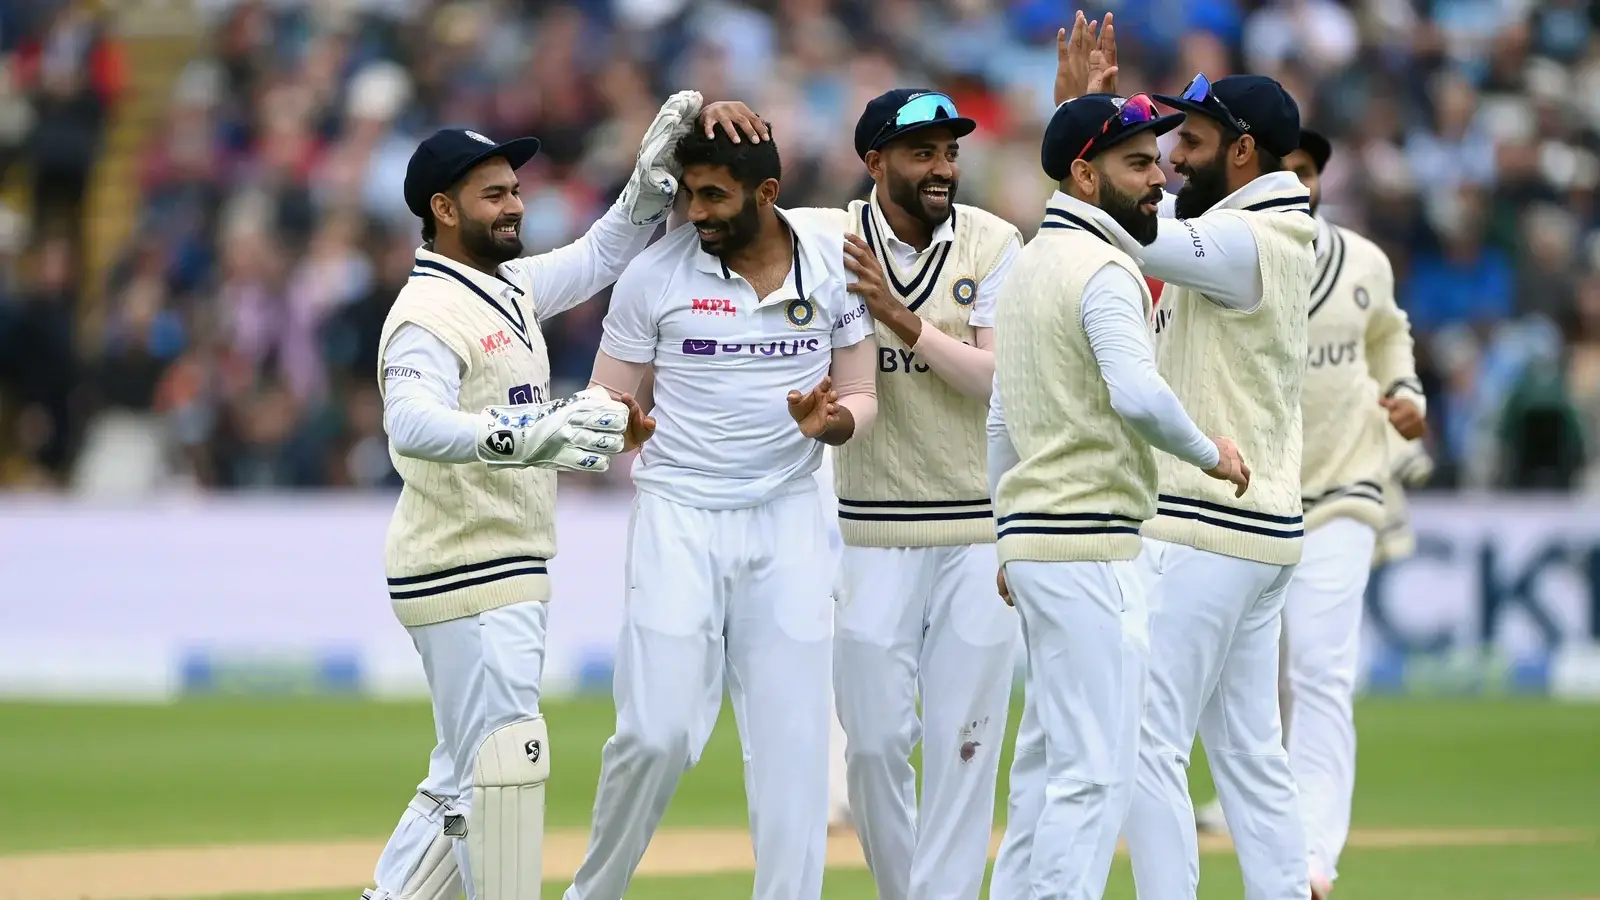  पूर्व-इंग्लैंड के खिलाड़ी ने IND और NZ के 'गेंदबाजी मानक' की तुलना की, फैसला सुनाया |  क्रिकेट
